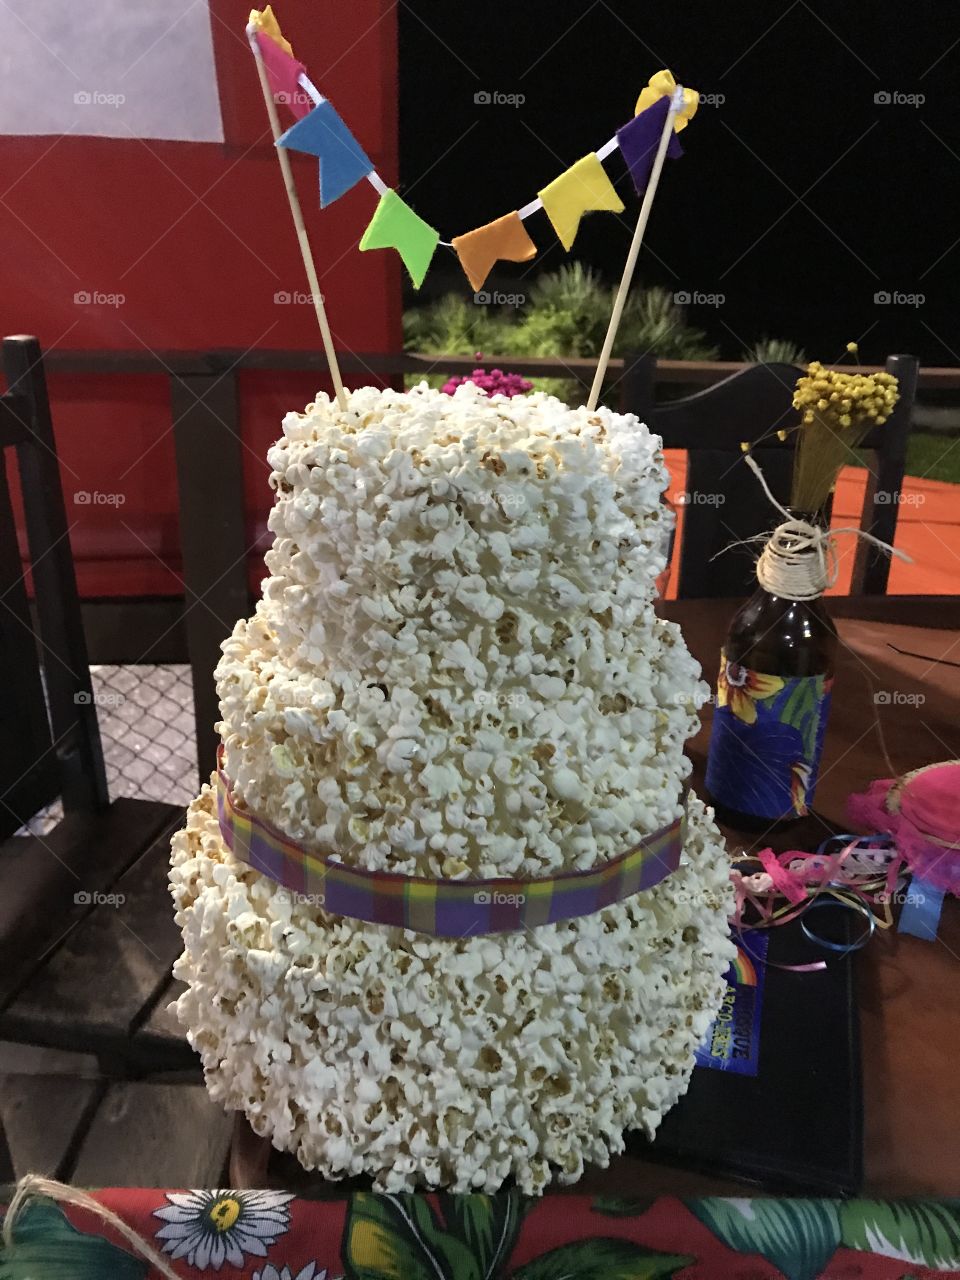 São João! Popcorn cake